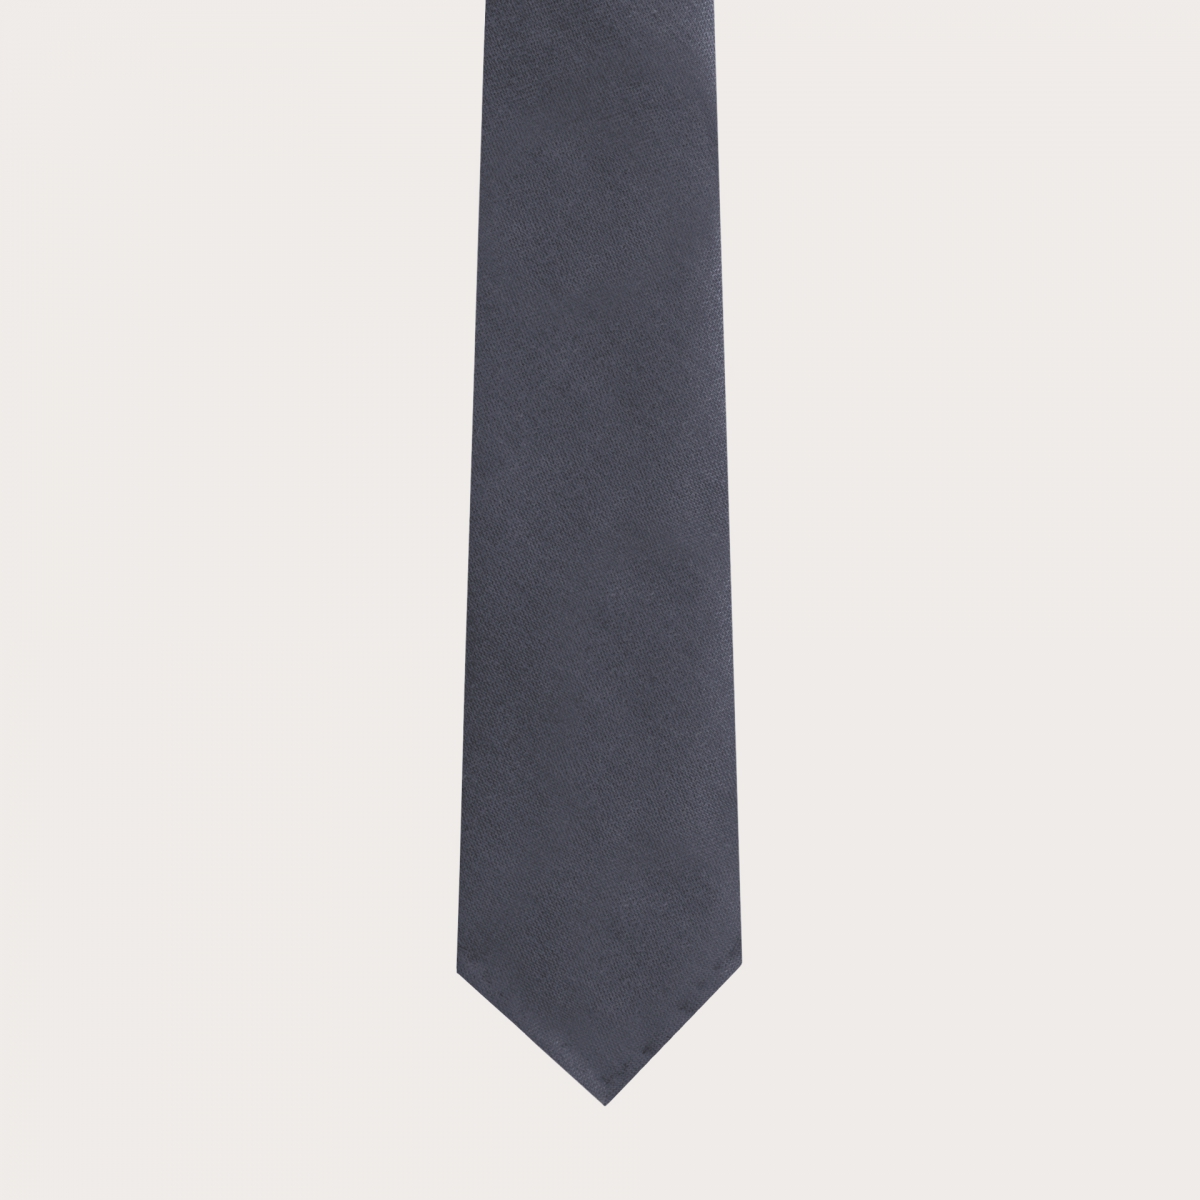 Cravate non doublée en laine vierge et chanvre, gris foncé